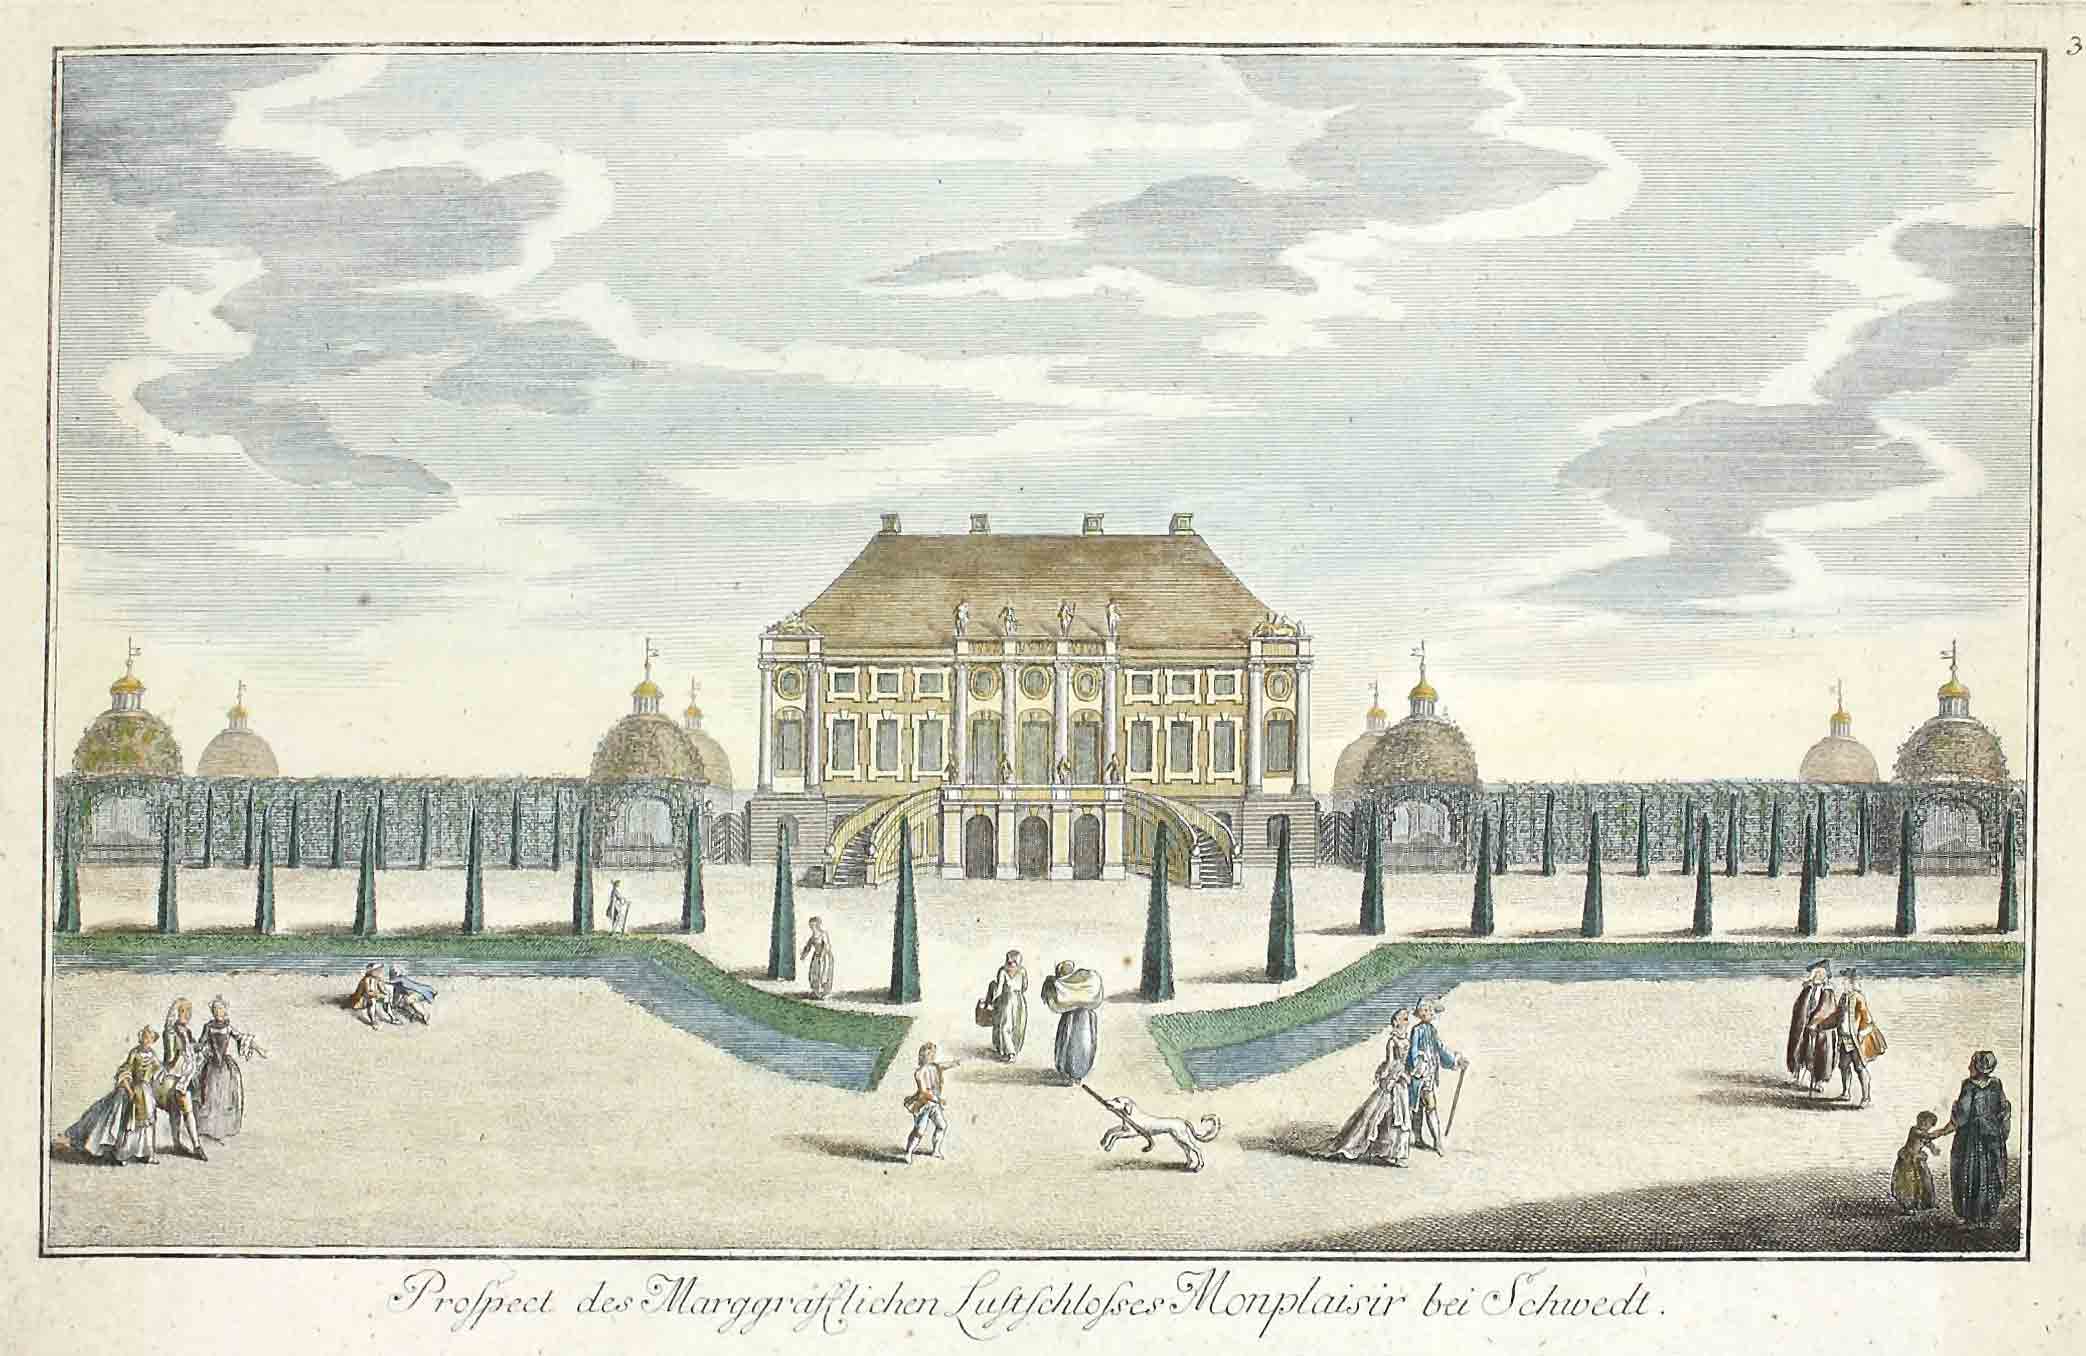 Auktionshaus Quentin Berlin Ansicht  Schwedt  J. D. Schleuen  um 1780 / Prospect des MarggrÃ¤flichen Lustschlosses Monplaisir bei Schwedt. Kolorierter Kupferstich. Pg. 21 x 33 